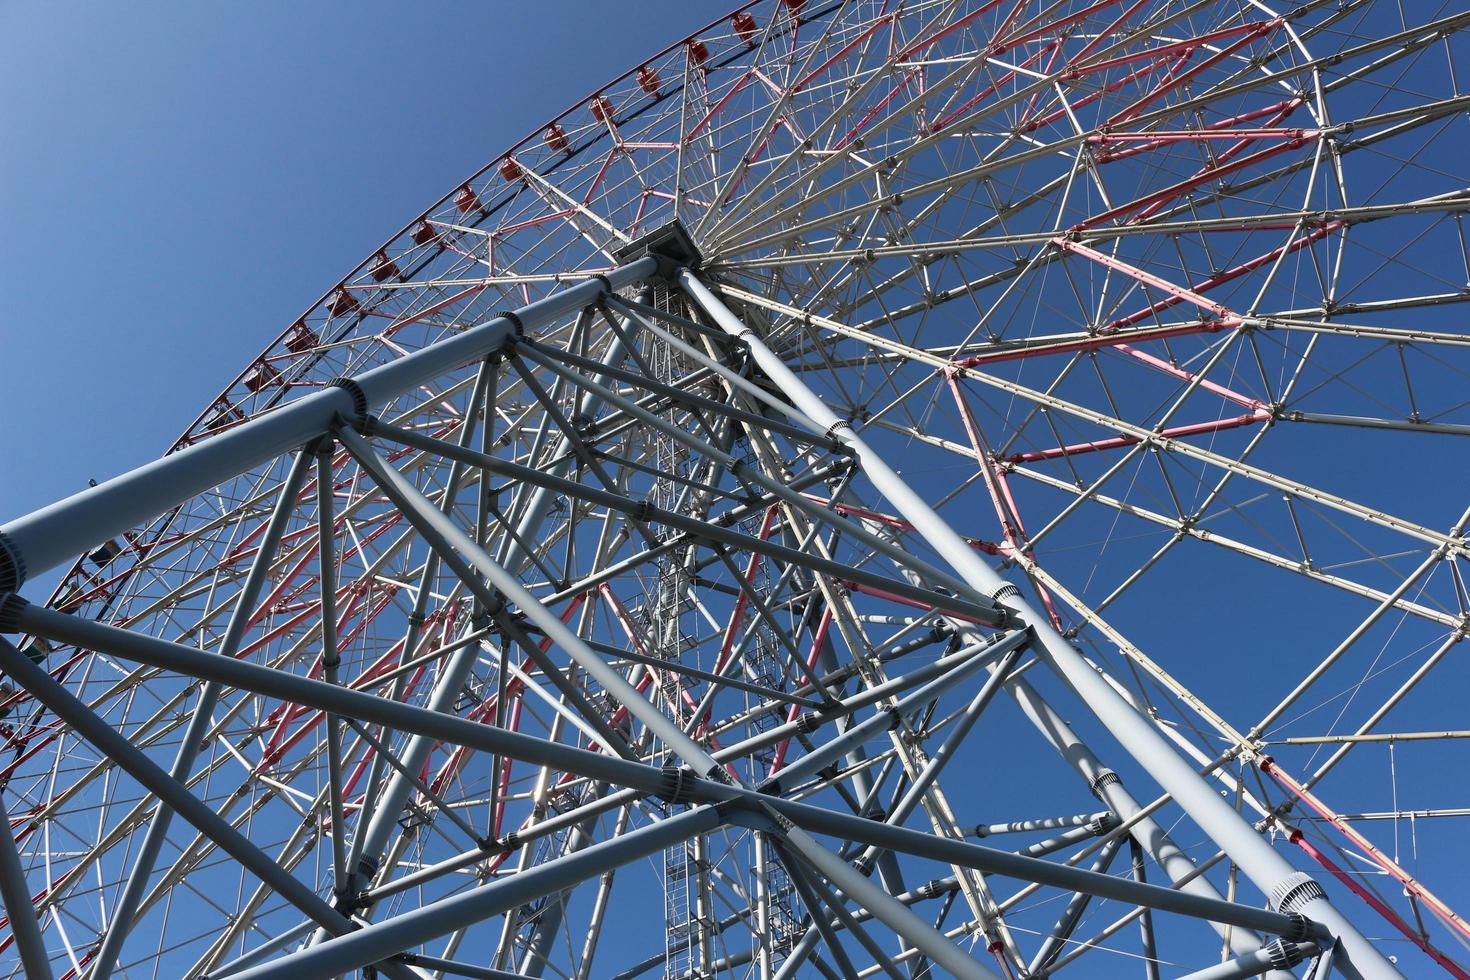 grande roue avec ciel bleu au parc d'attractions photo